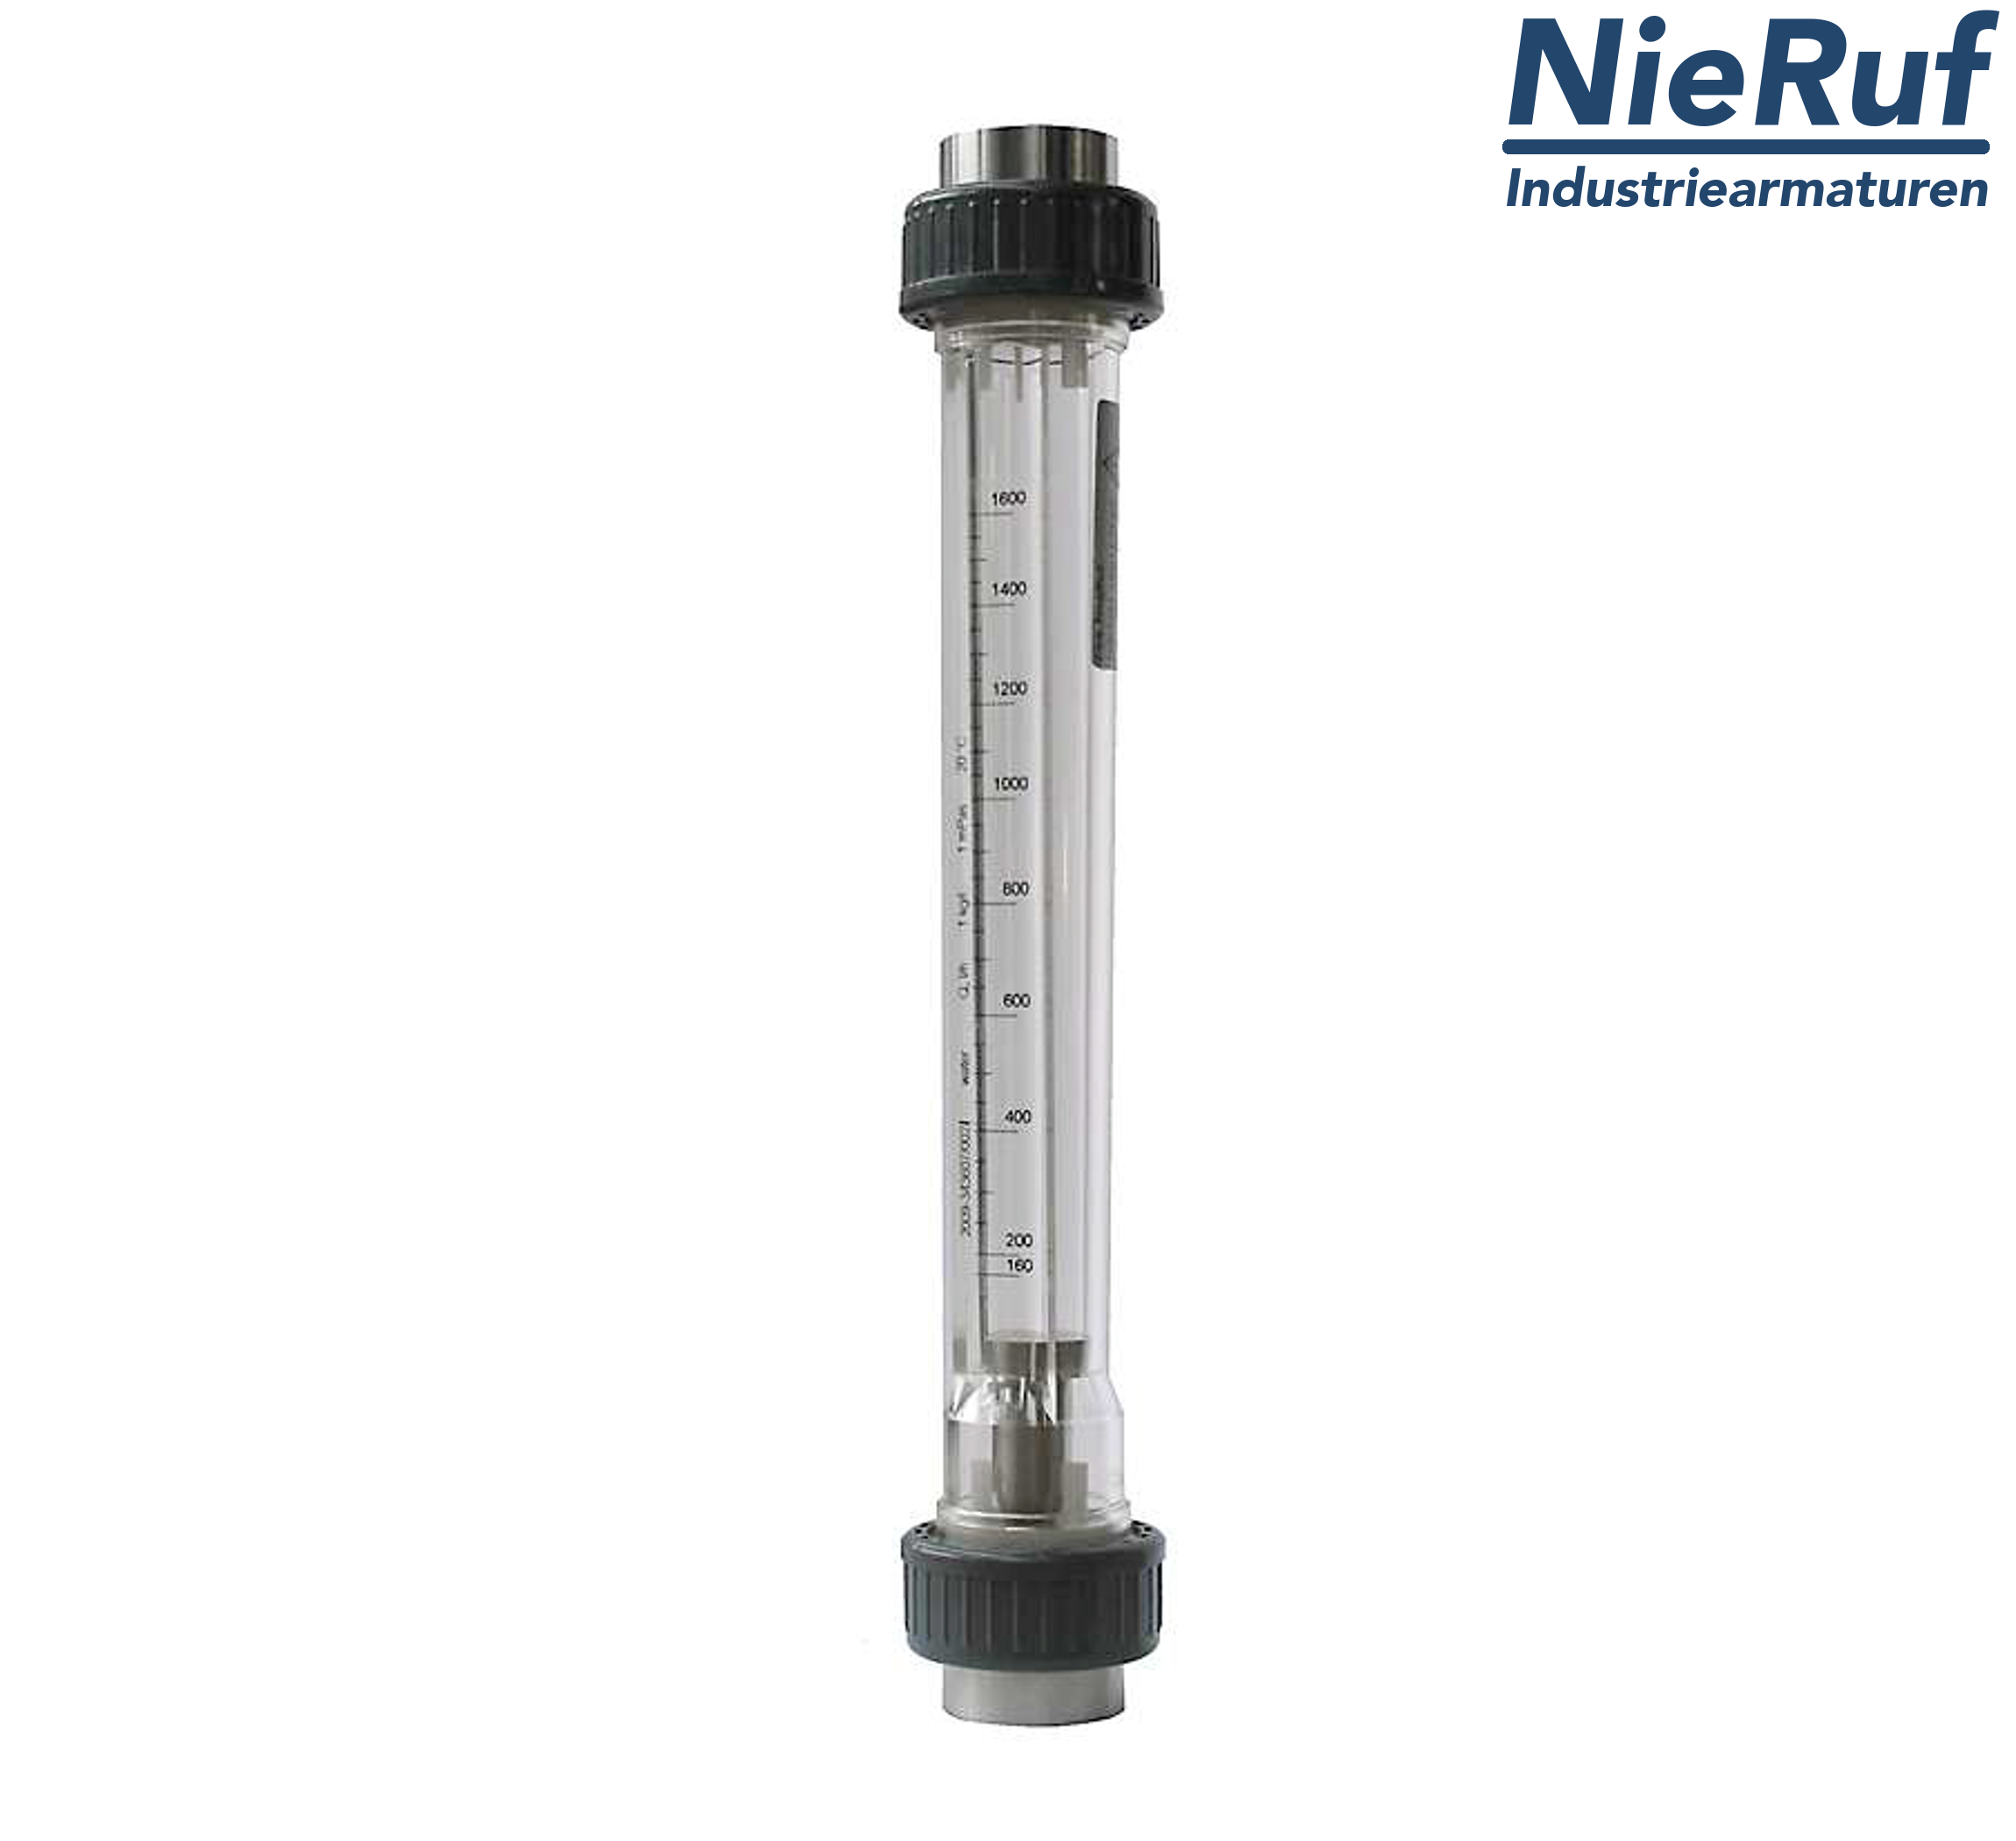 Variable area flowmeter 1 1/2" Inch NPT 70000.0 - 280000 l/h air NBR